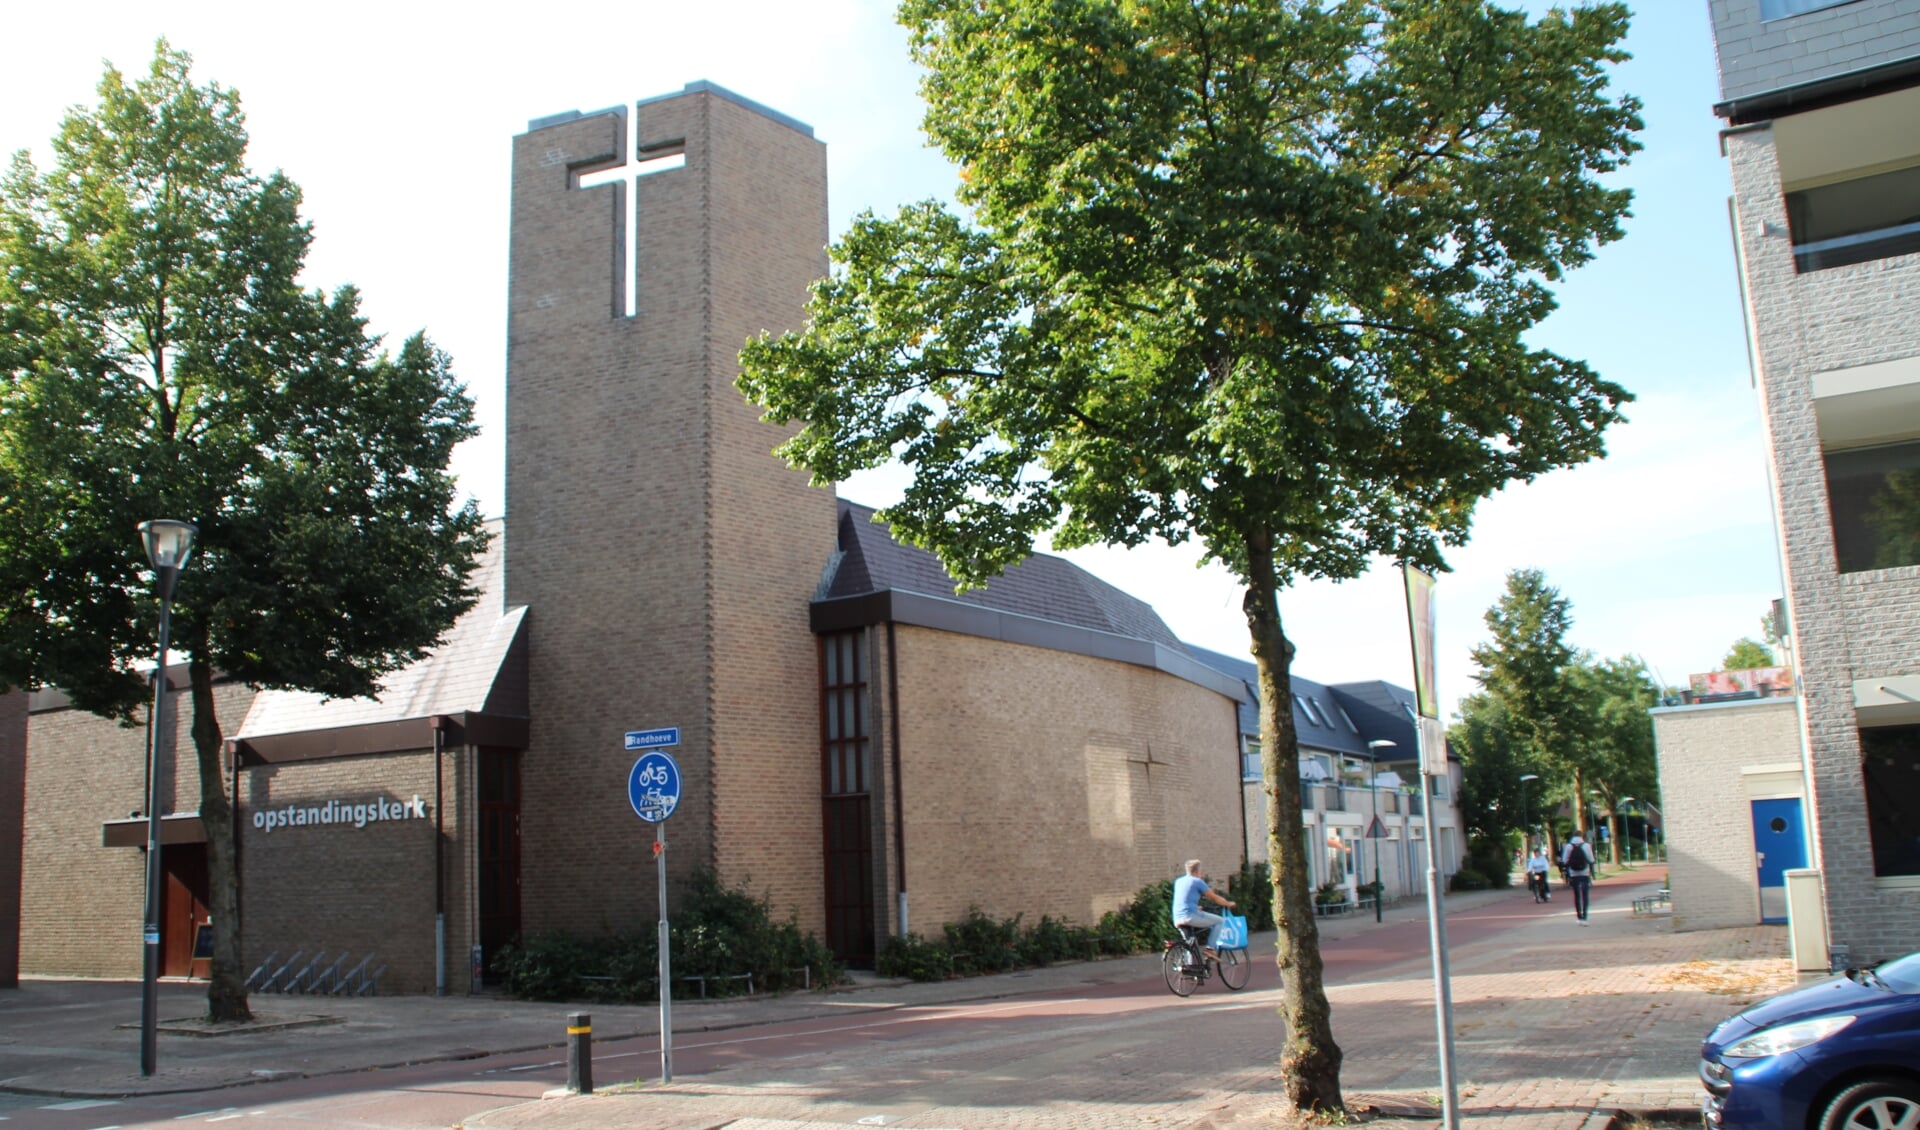 Opstandingskerk